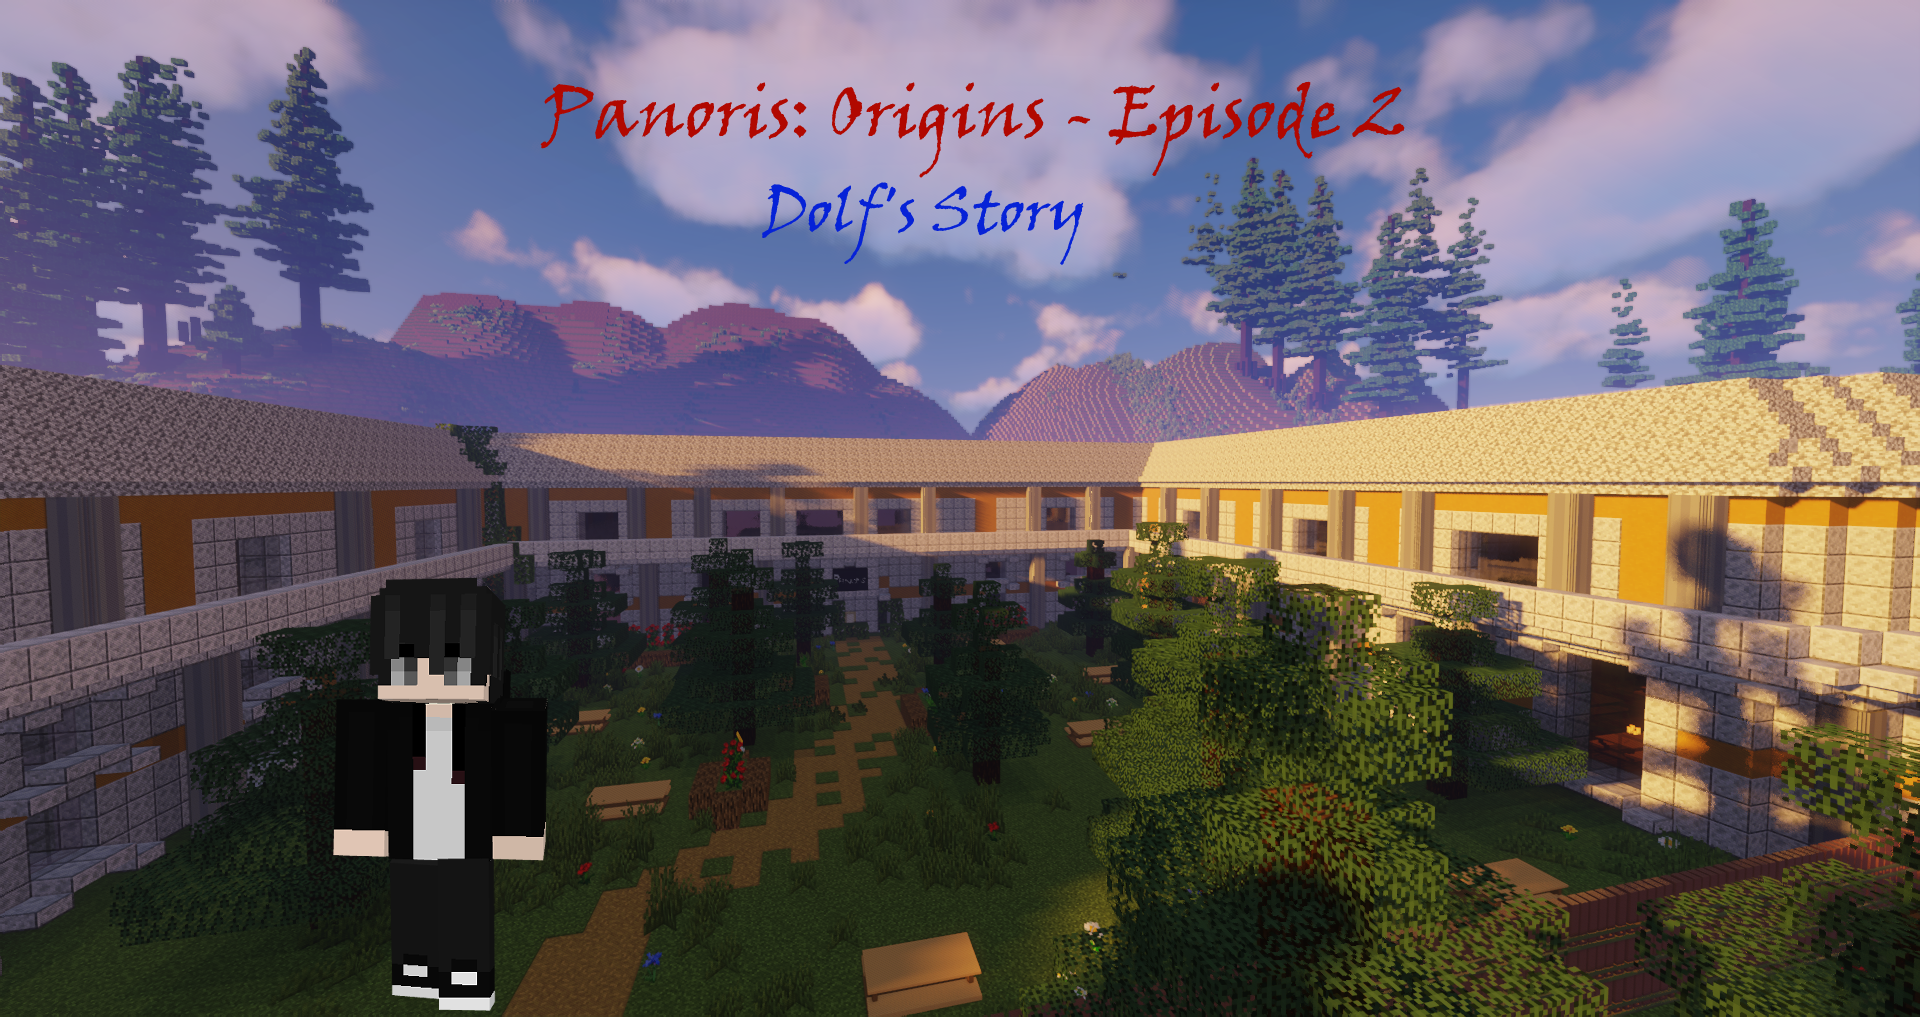 Télécharger Panoris: Origins - Episode 2 Dolf's Story 1.0 pour Minecraft 1.19